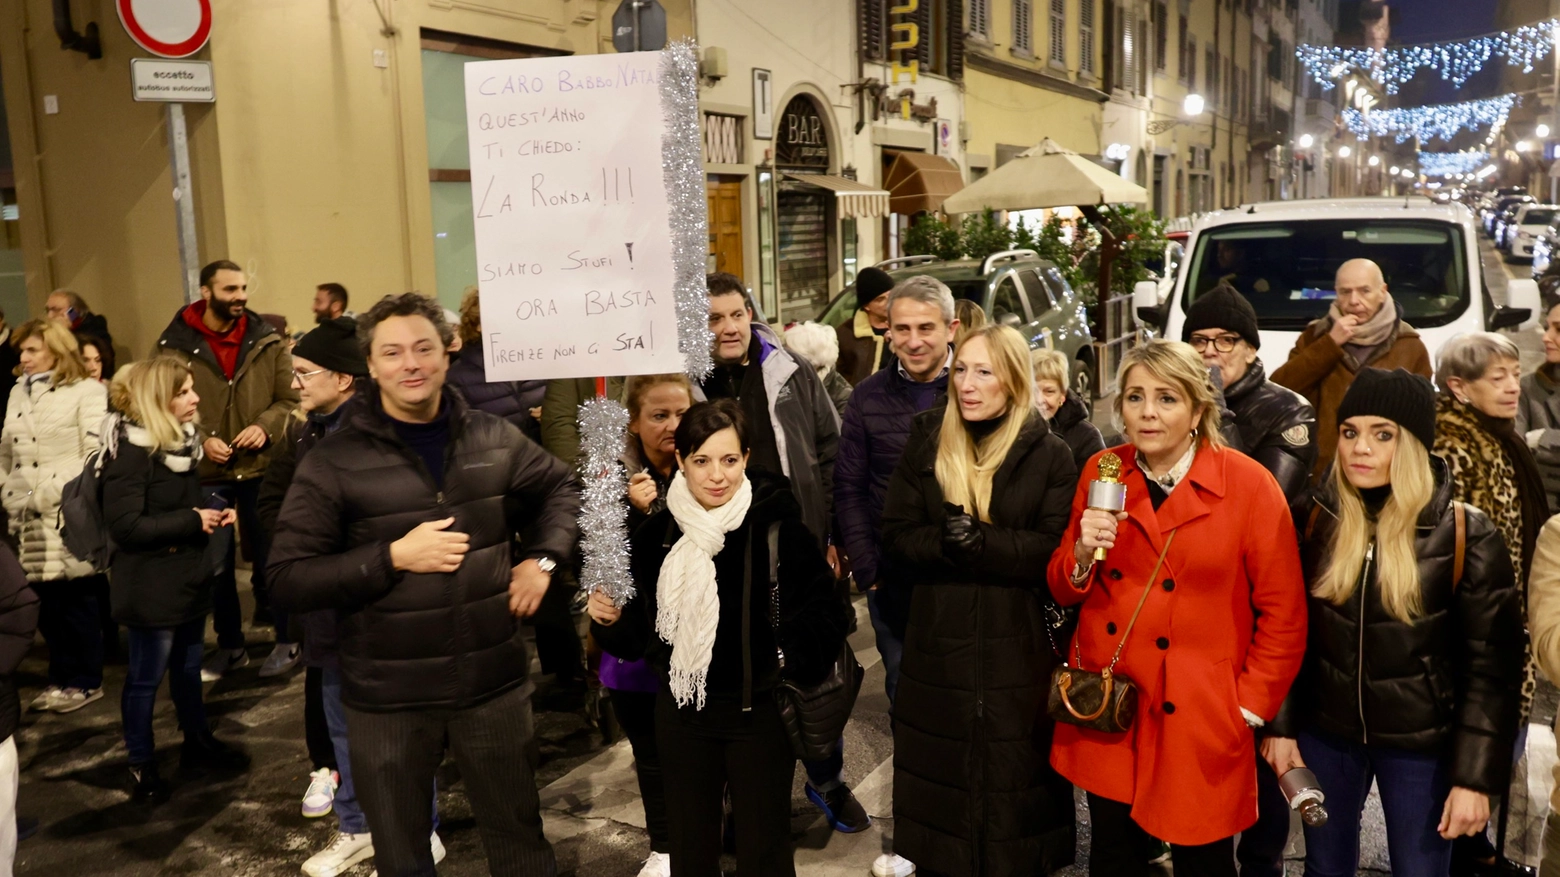 Spaccate e furti a Firenze, la protesta dei commercianti